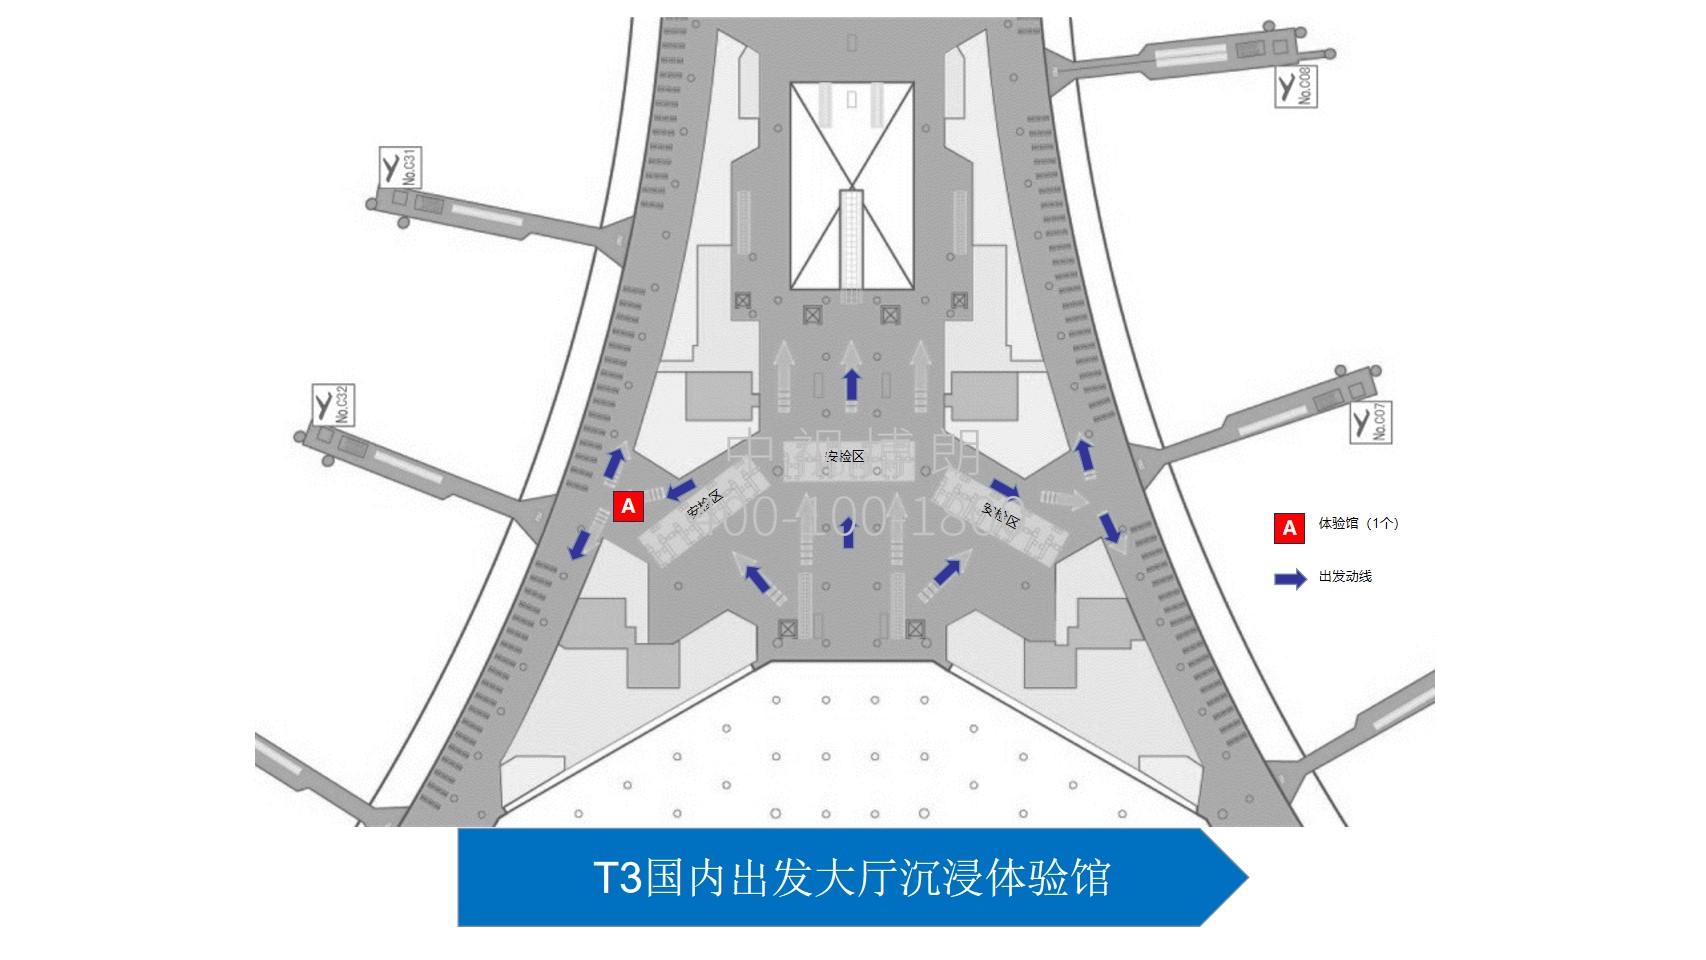 北京首都机场广告-T3国内出发大厅沉浸体验馆位置图